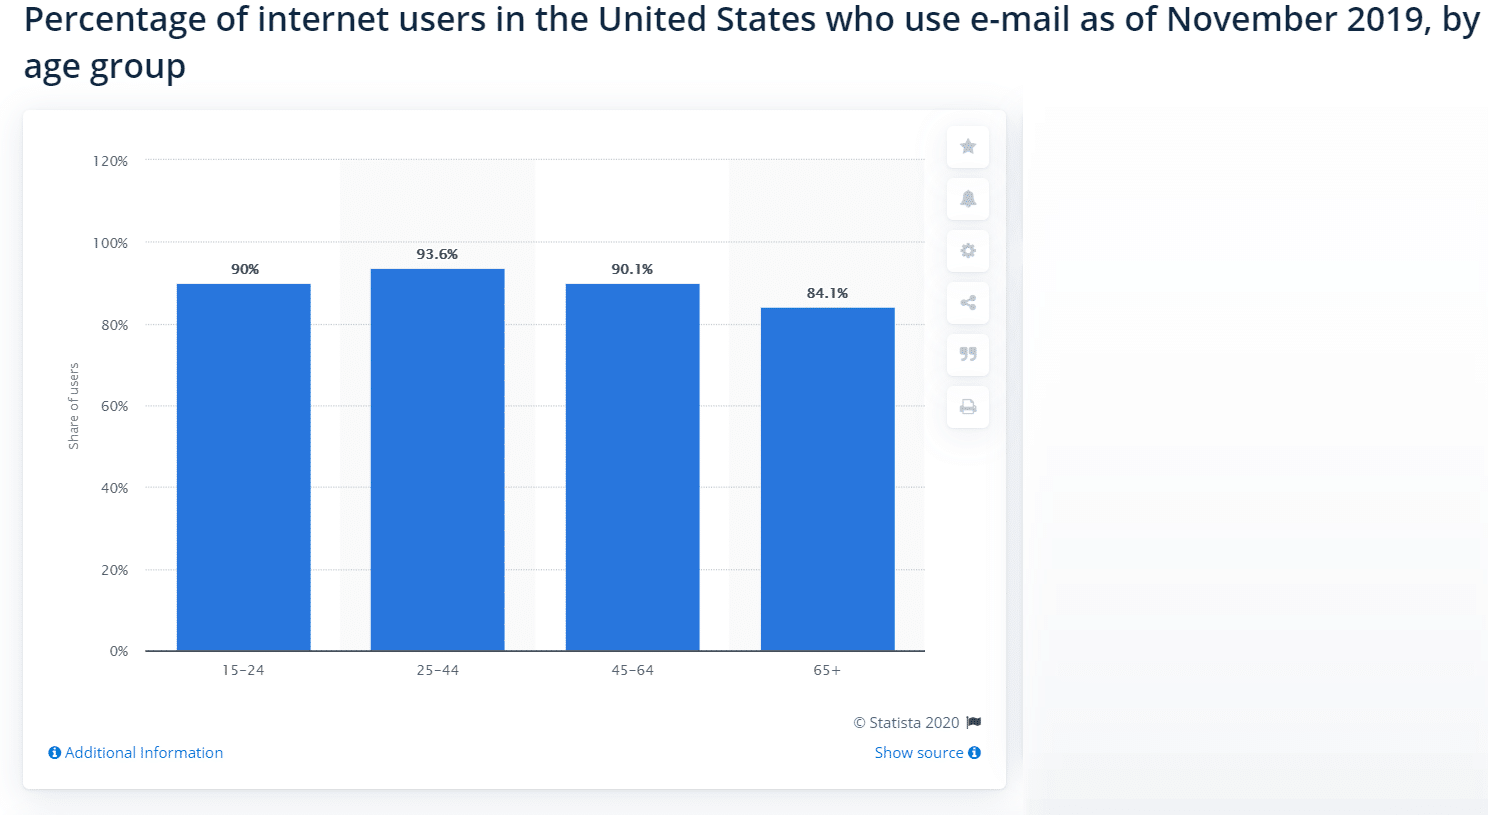 米国におけるメール利用者の年齢別割合